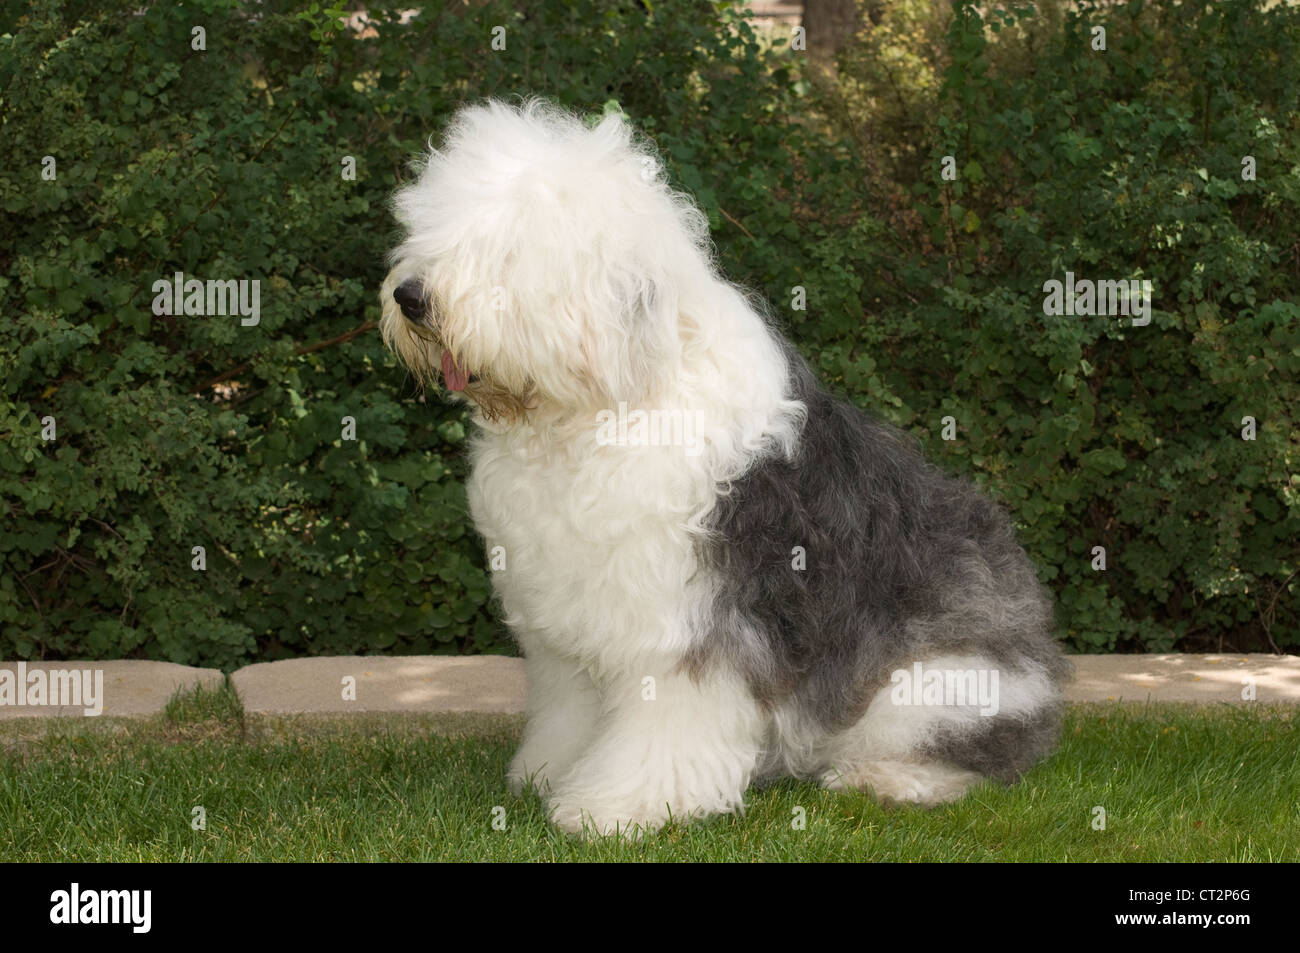 Mais de 3 imagens grátis de Old English Sheepdog e Cachorro - Pixabay